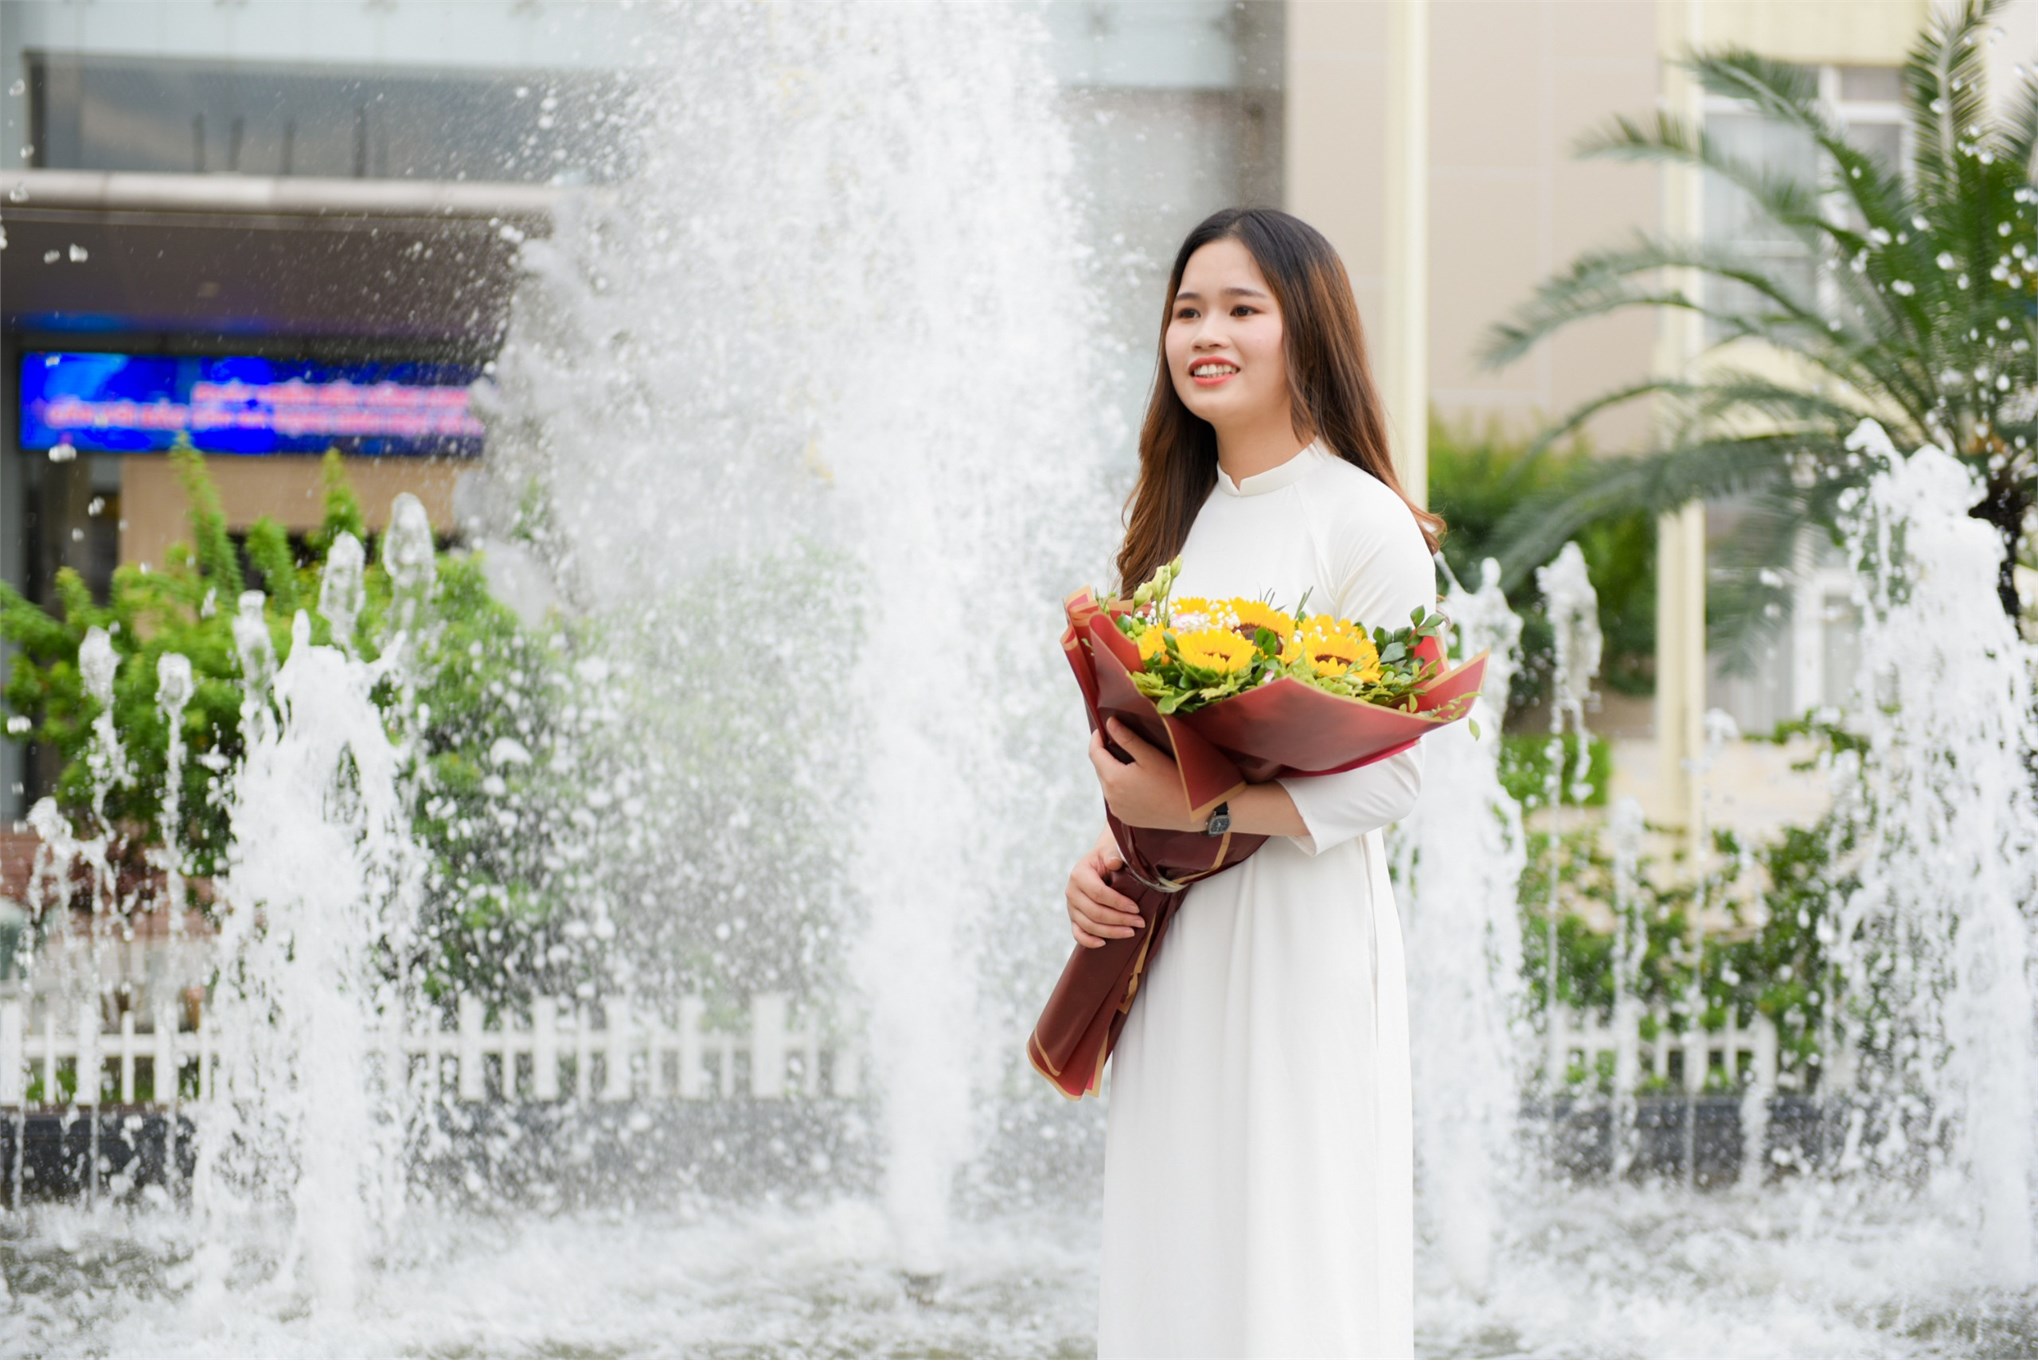 Nguyễn Thúy Lan- Nữ sinh vượt khó vươn lên xuất sắc giành tấm bằng tốt nghiệp Giỏi ngành CNKT Cơ khí